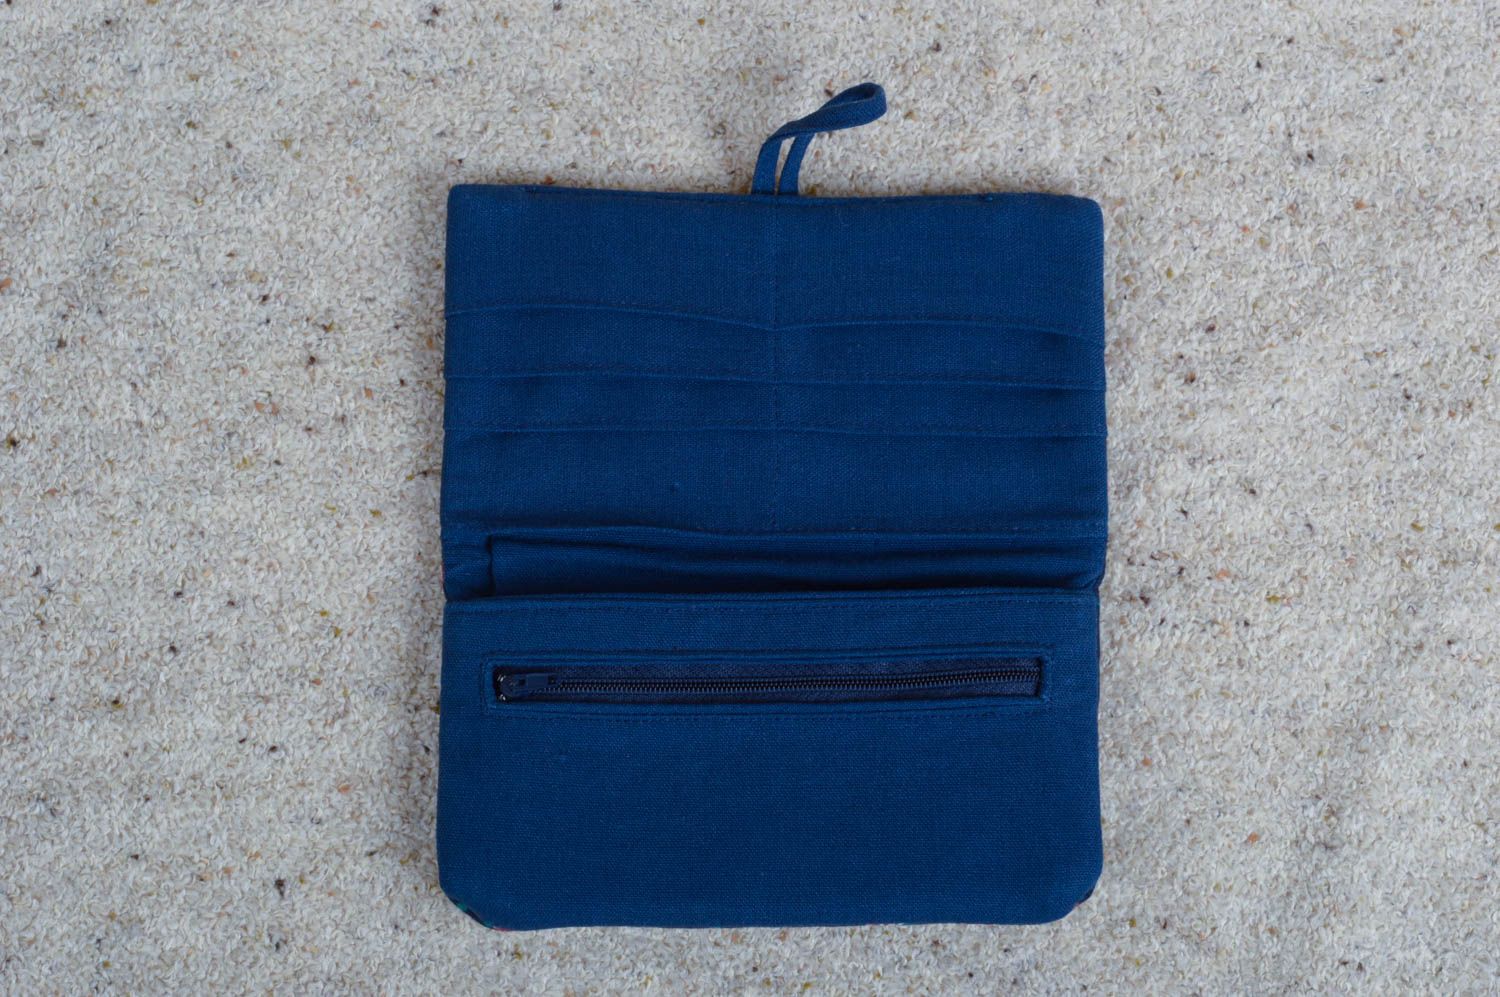 Кошелек для женщин ручной работы кошелек из ткани модный кошелек синий фото 4